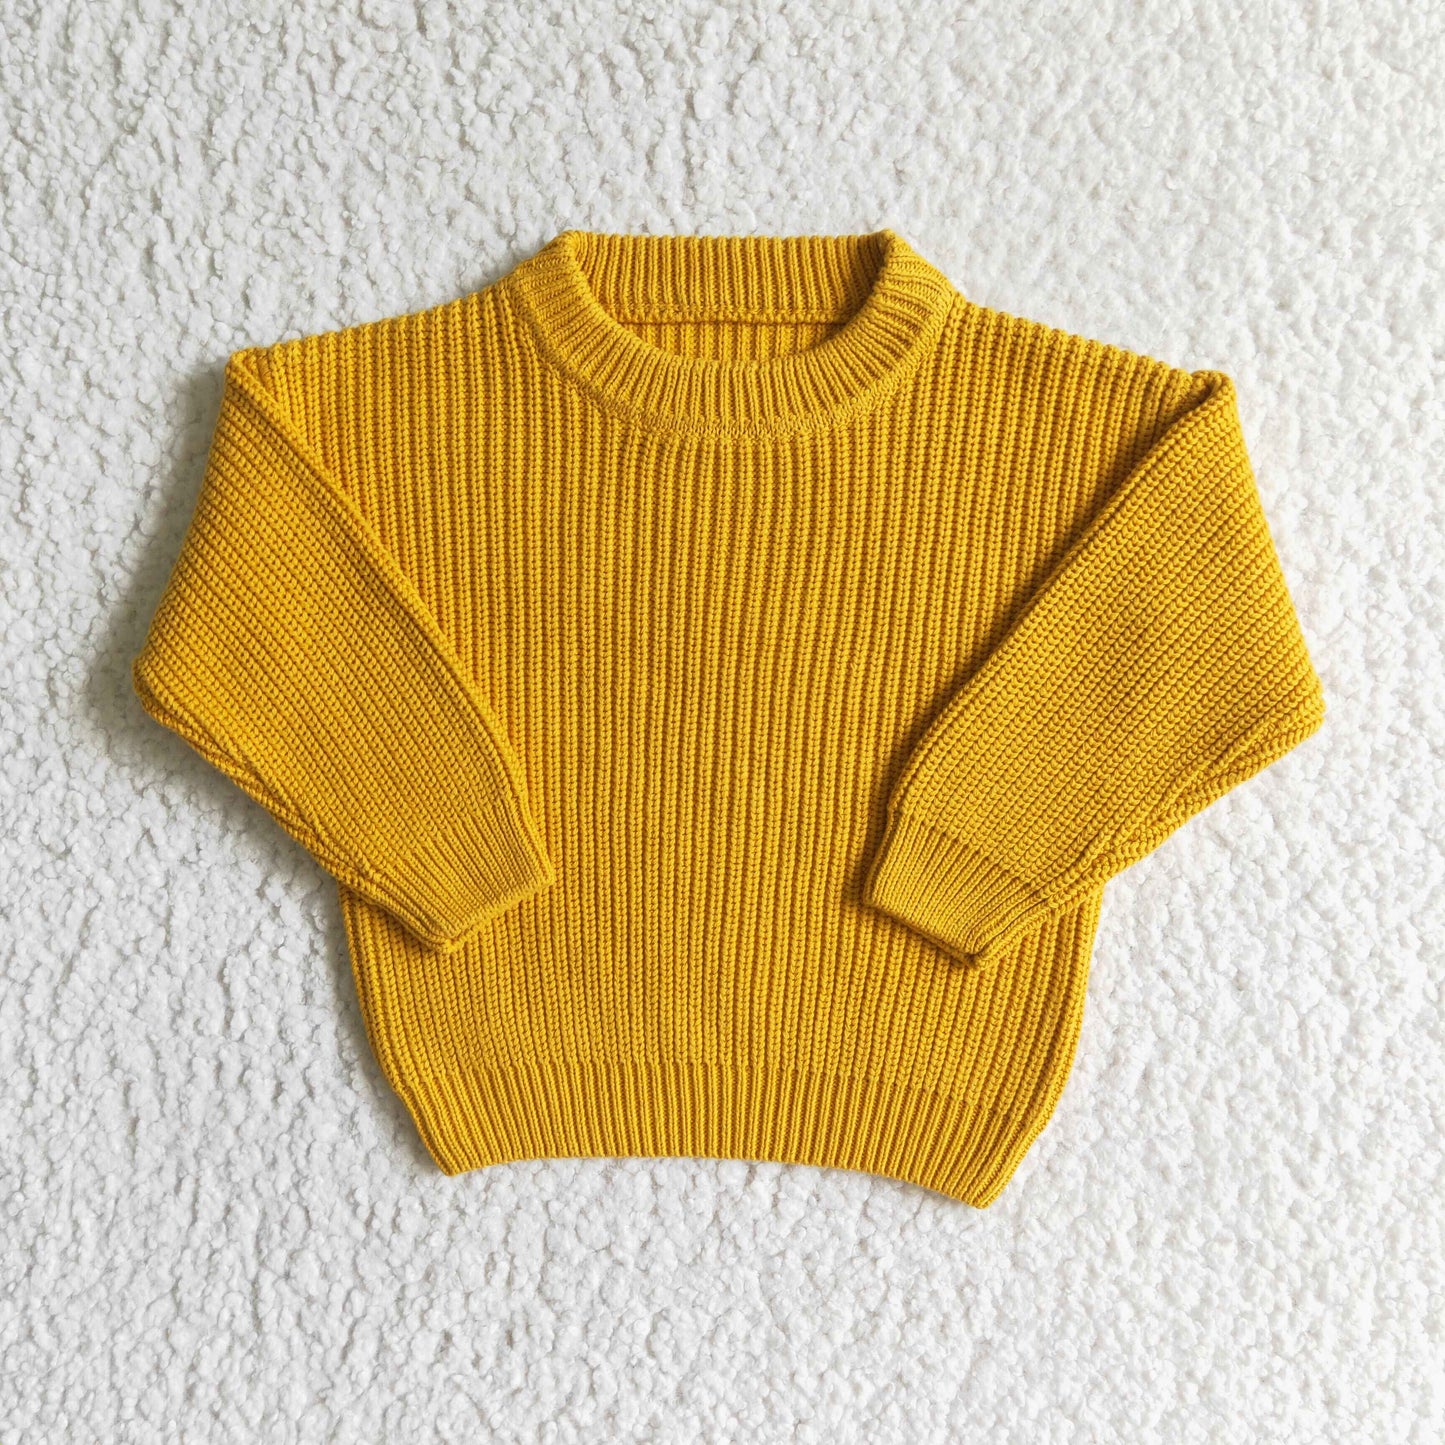 GT0031 Kids Green Knit Sweater